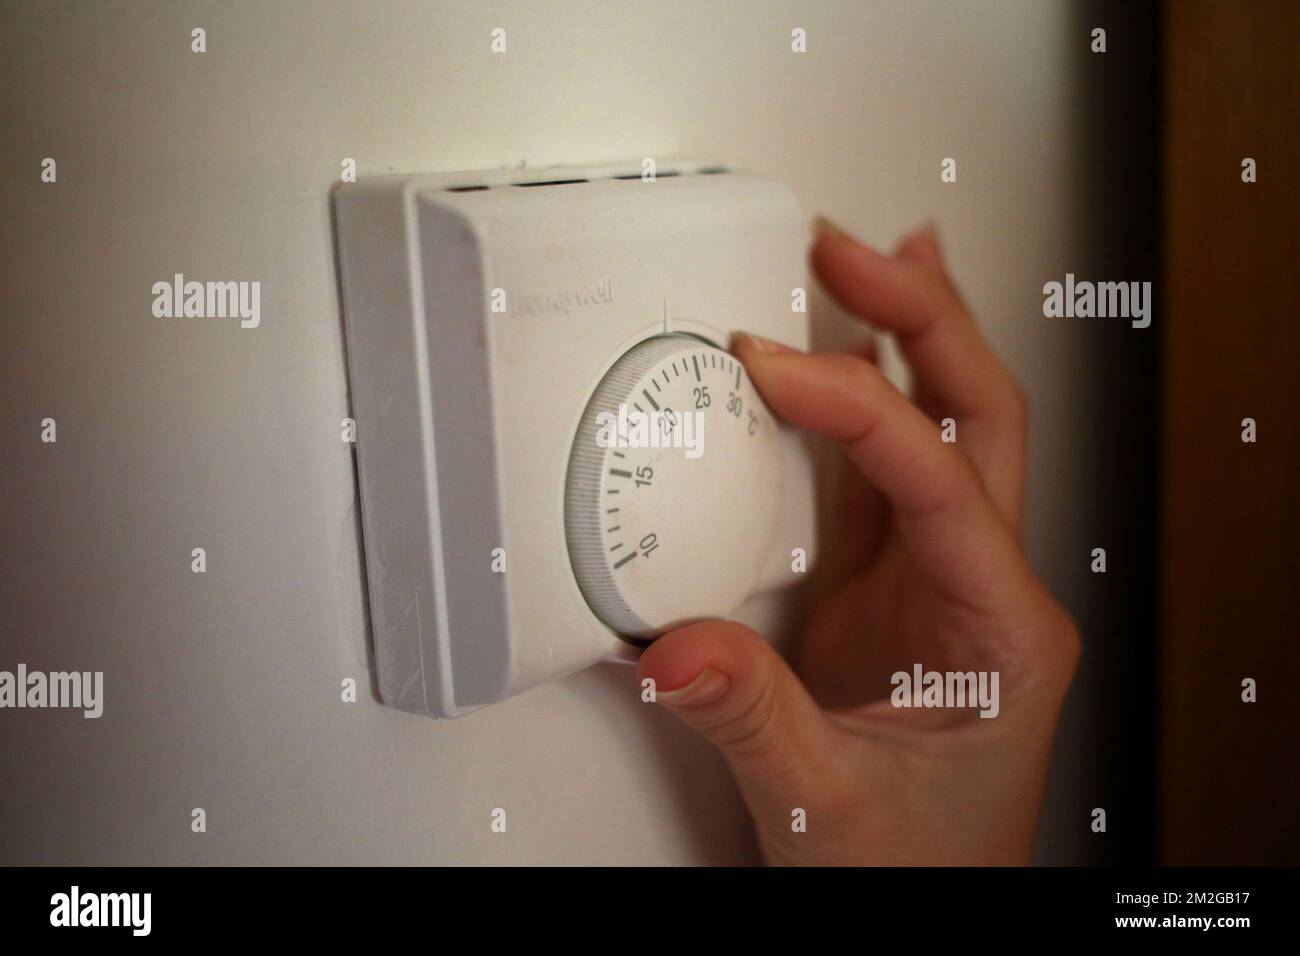 Foto de archivo con fecha 19/09/13 de una persona que usa un termostato de calefacción  central. Los esfuerzos para ayudar a los hogares a ahorrar energía  -incluidas las campañas de información- han